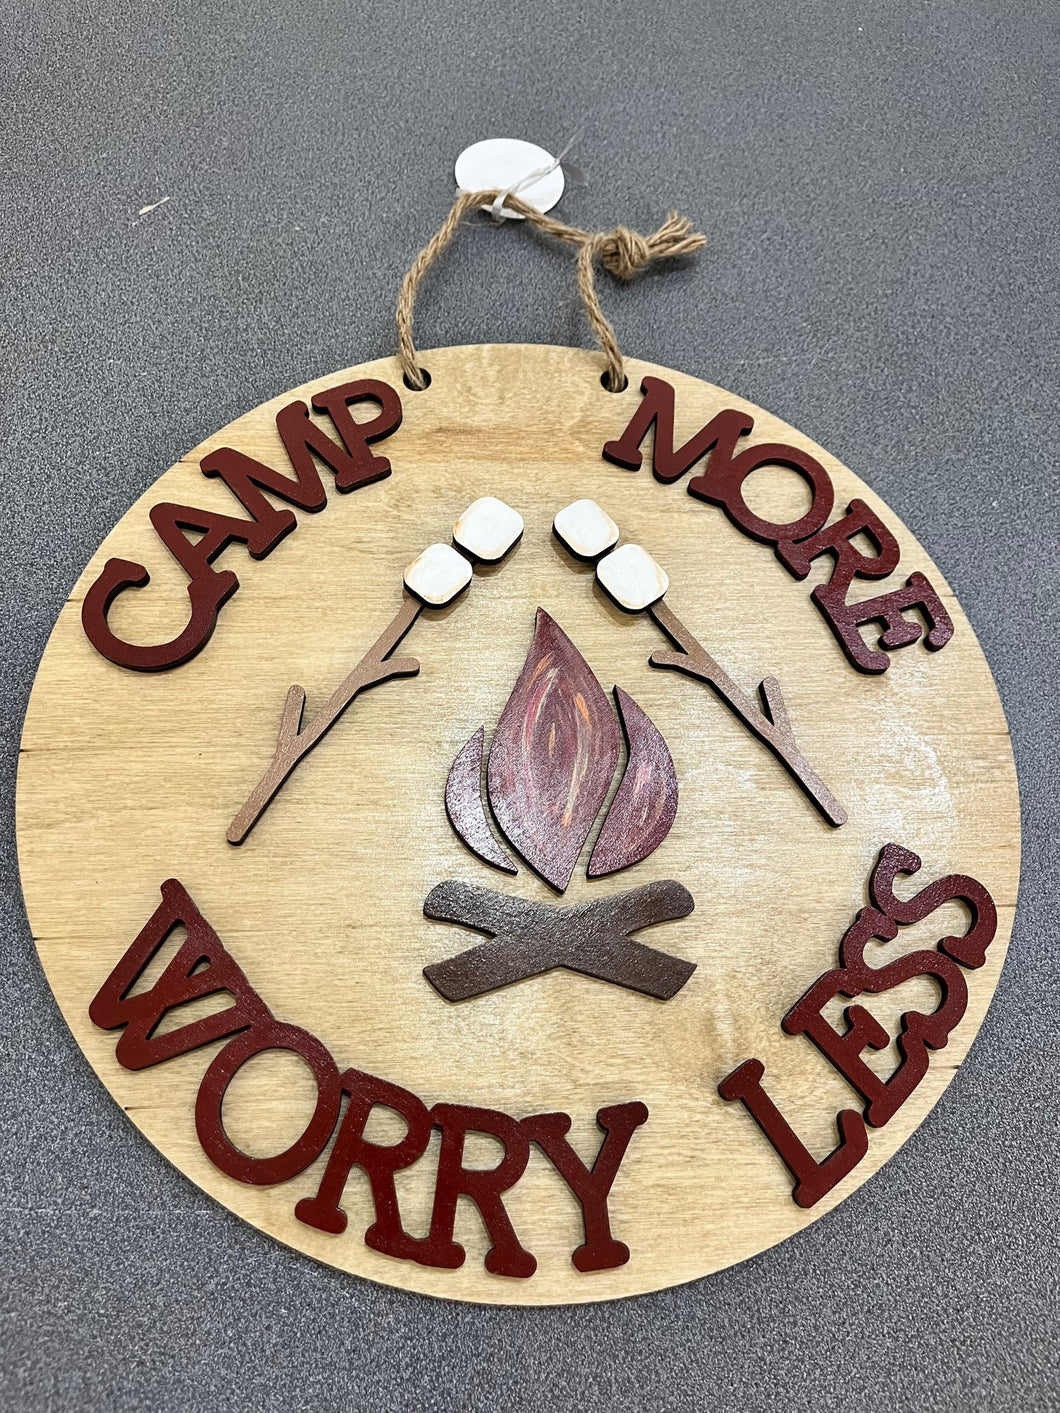 Camping Sign Workshop- Saturday May 25th